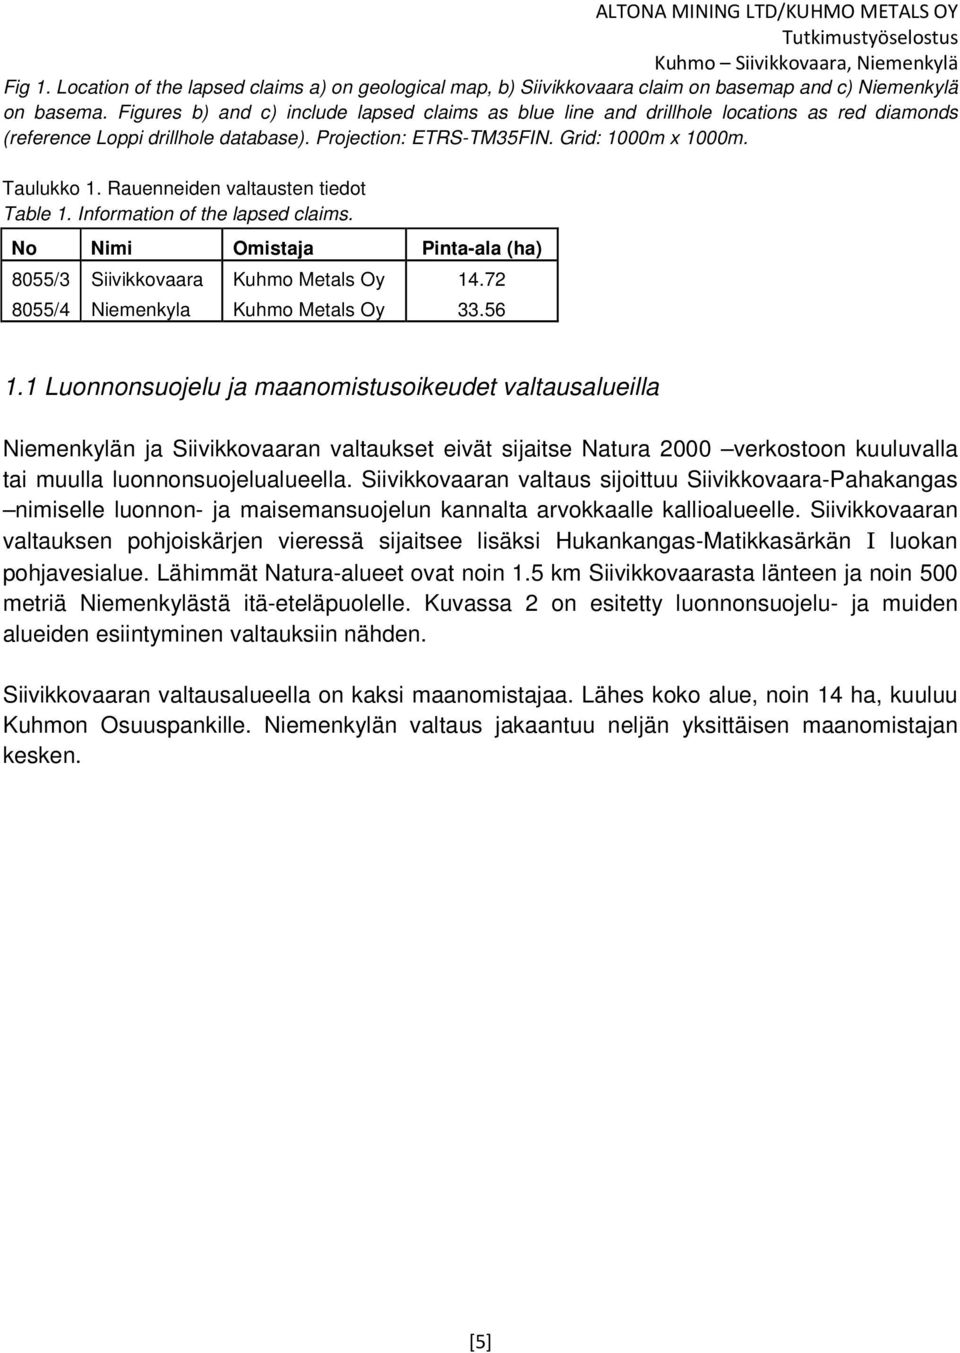 Rauenneiden valtausten tiedot Table 1. Information of the lapsed claims. No Nimi Omistaja Pinta-ala (ha) 8055/3 Siivikkovaara Kuhmo Metals Oy 14.72 8055/4 Niemenkyla Kuhmo Metals Oy 33.56 1.